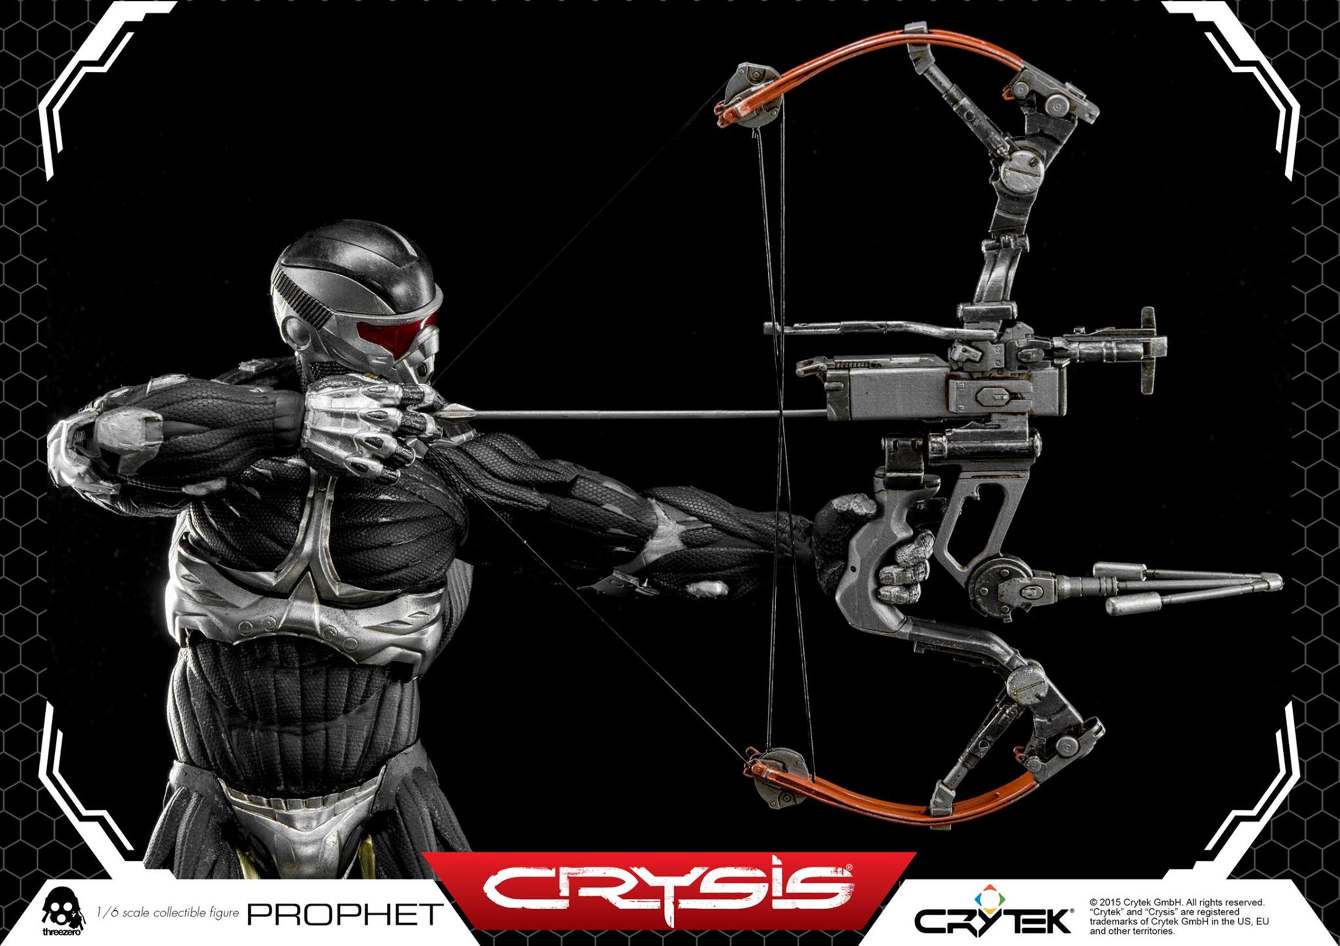 ThreeZero-Crysis-video-game-Prophet-CRY22_1340_c.jpg